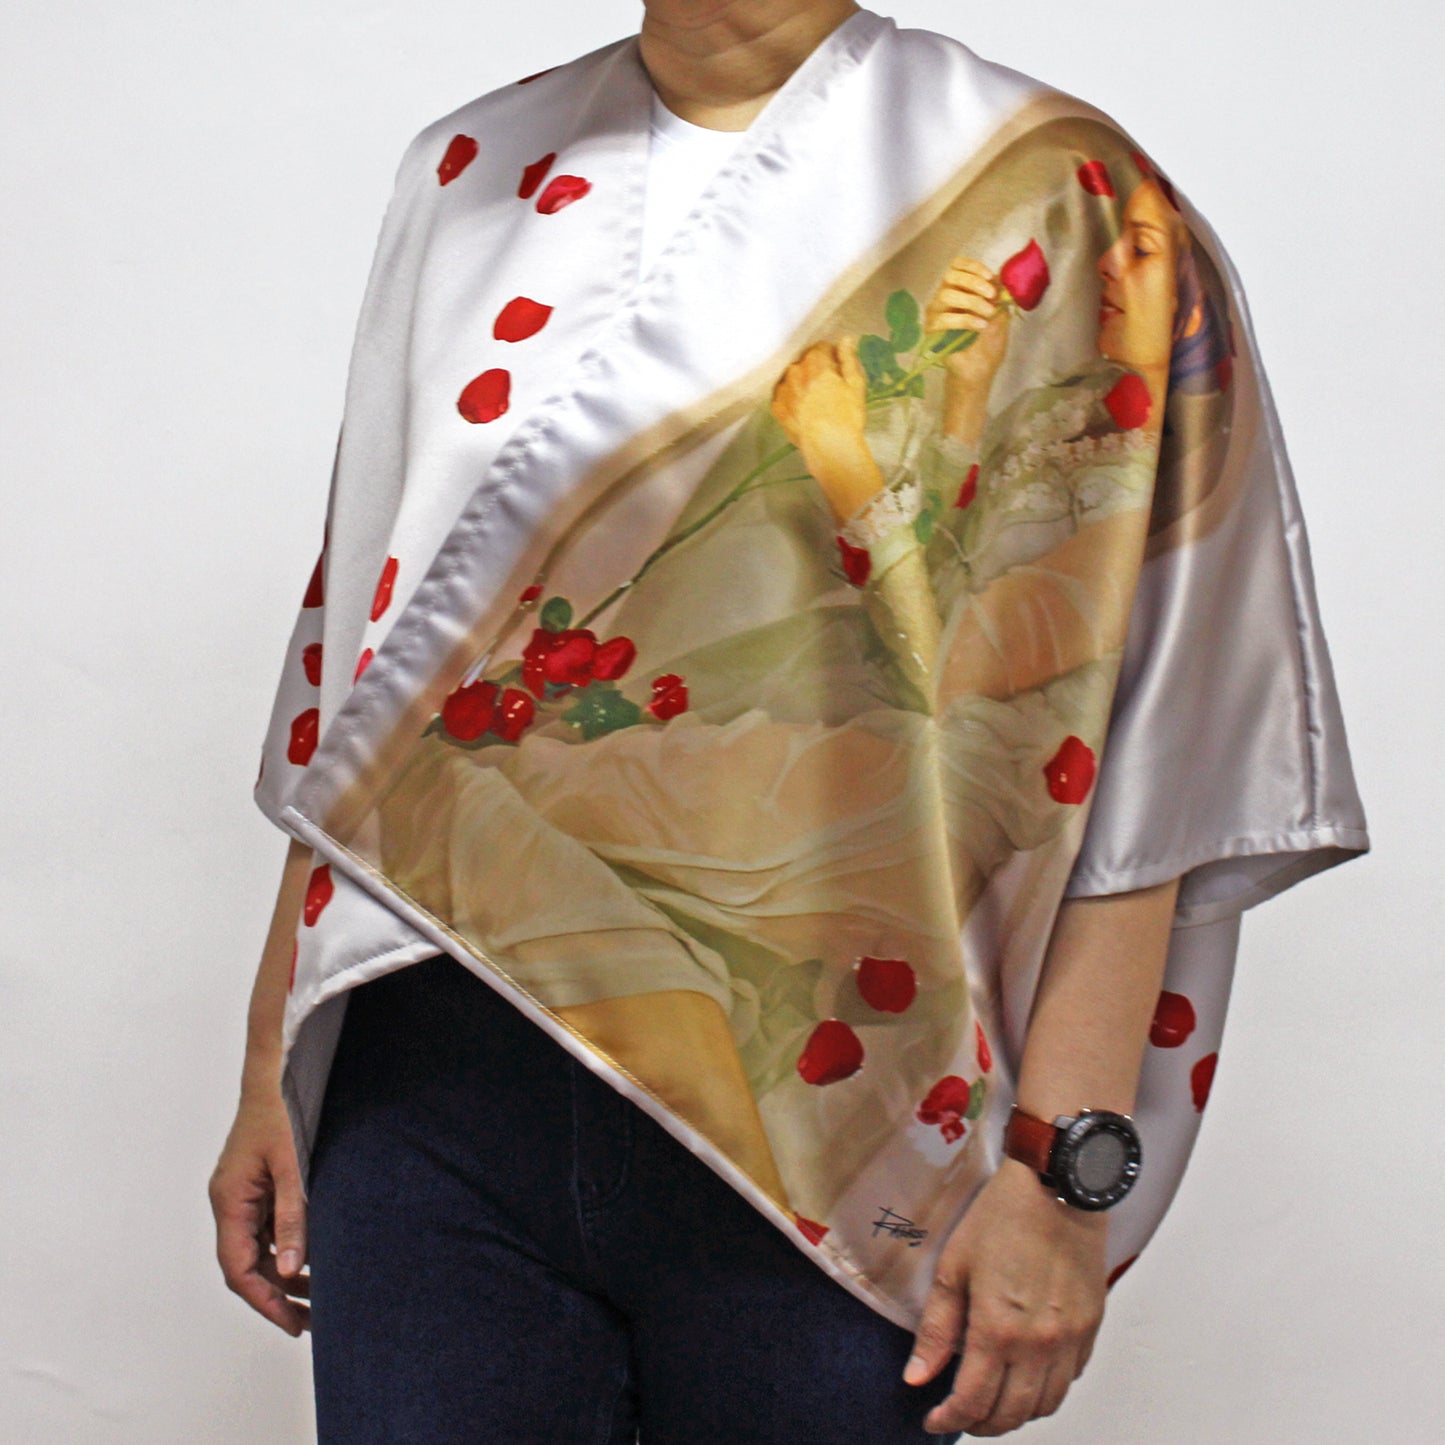 Rest In My Dreams Kimono Top